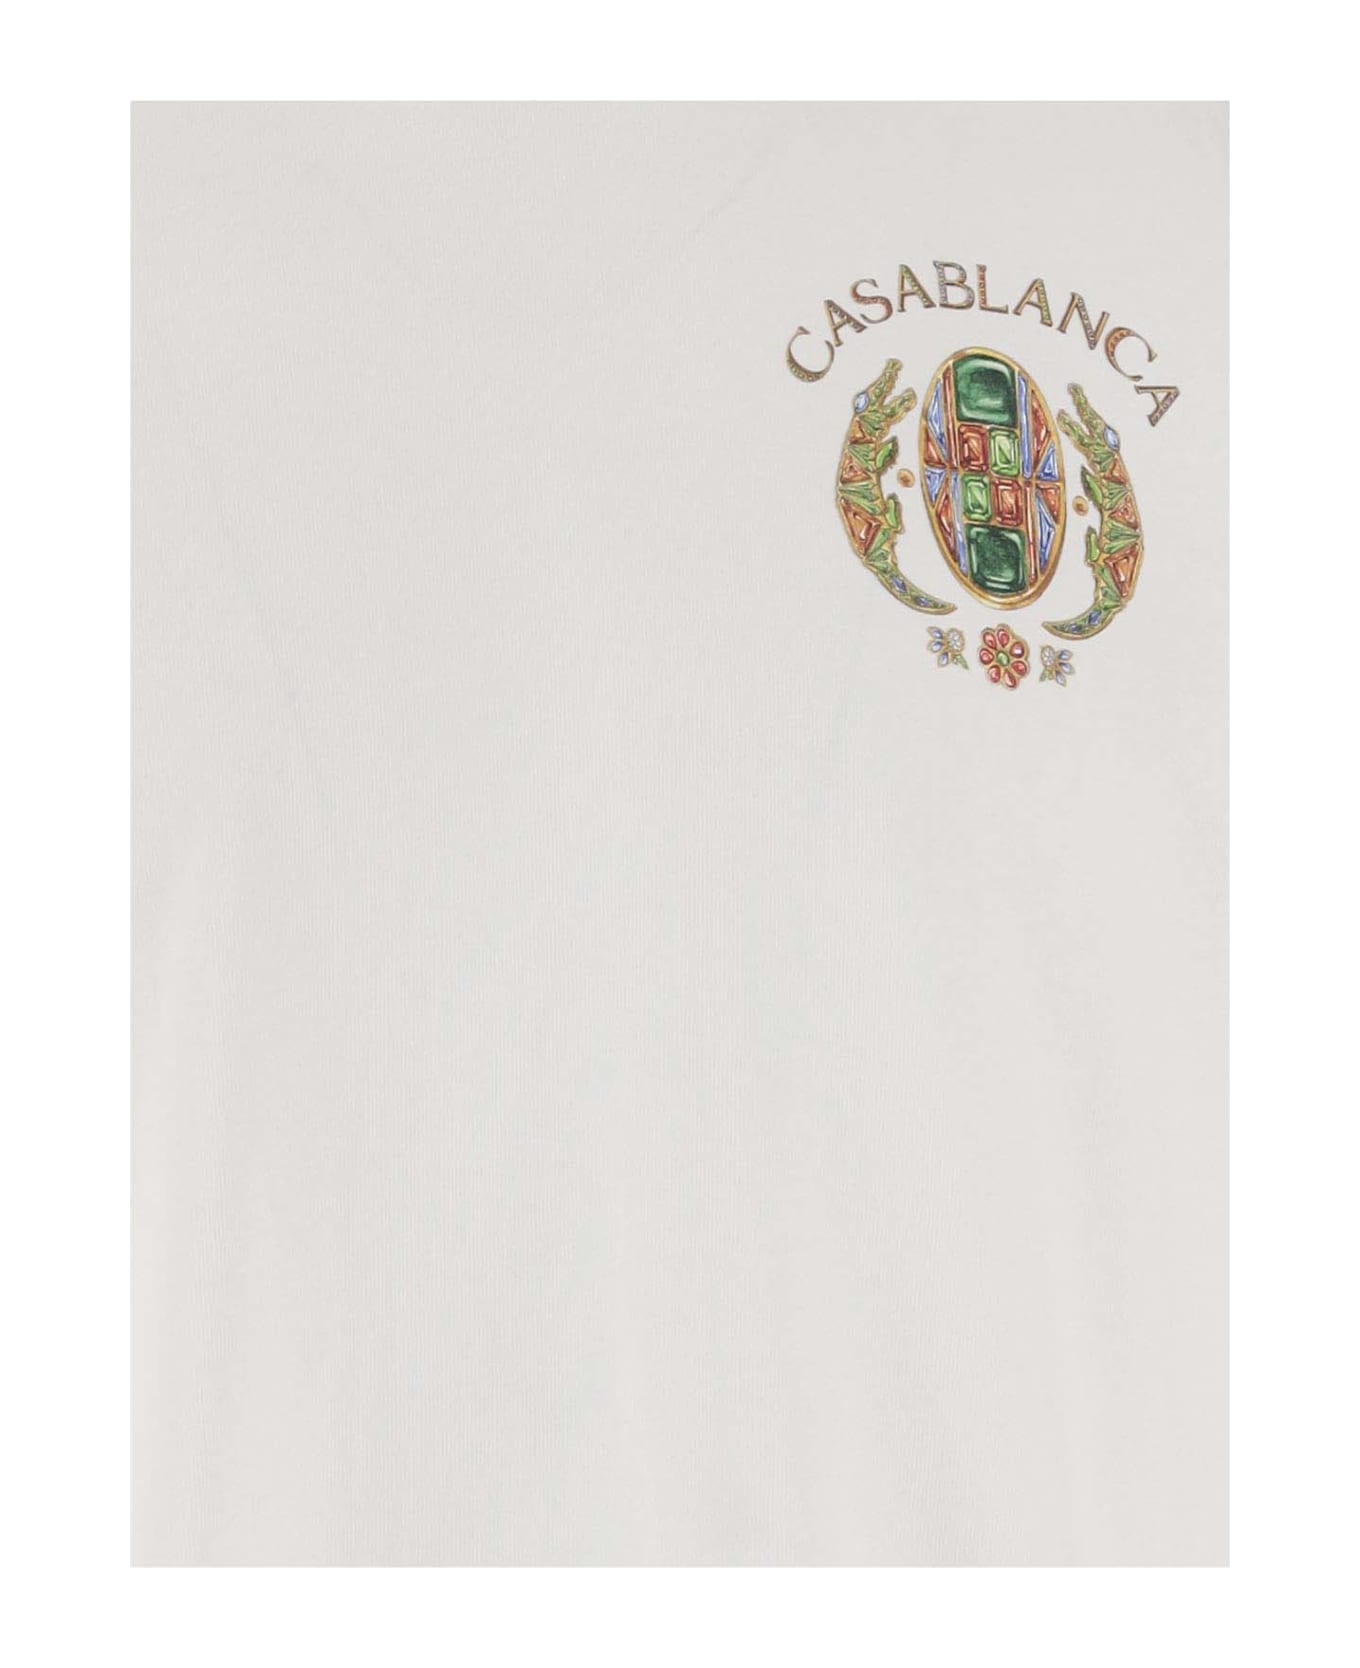 Casablanca T-shirt Joyaux D'afrique - White